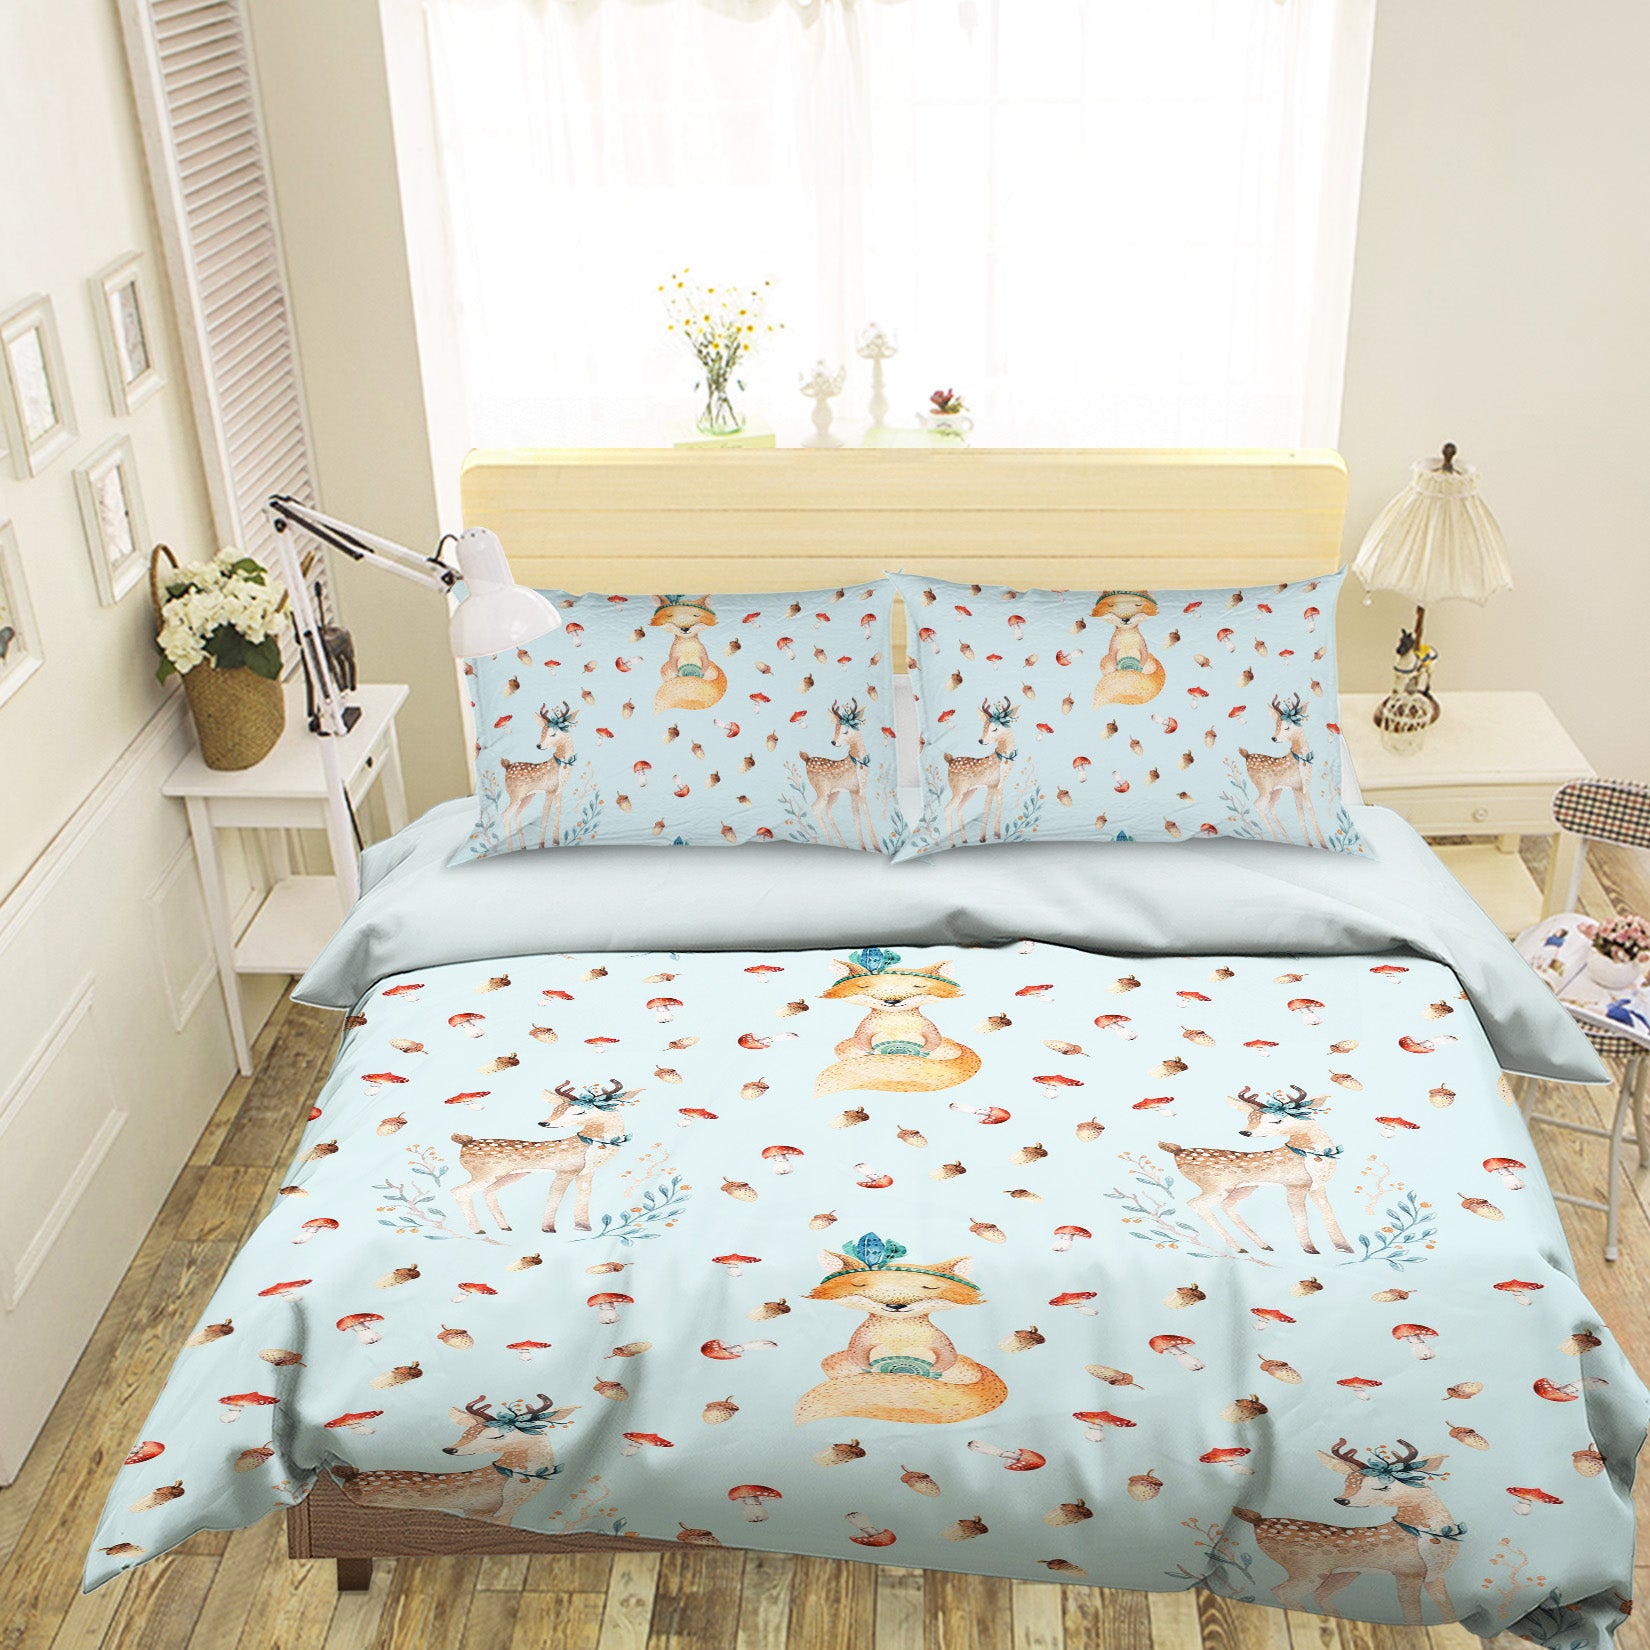 3D Mushroom Deer 214 Uta Naumann Bedding Bed Pillowcases Quilt